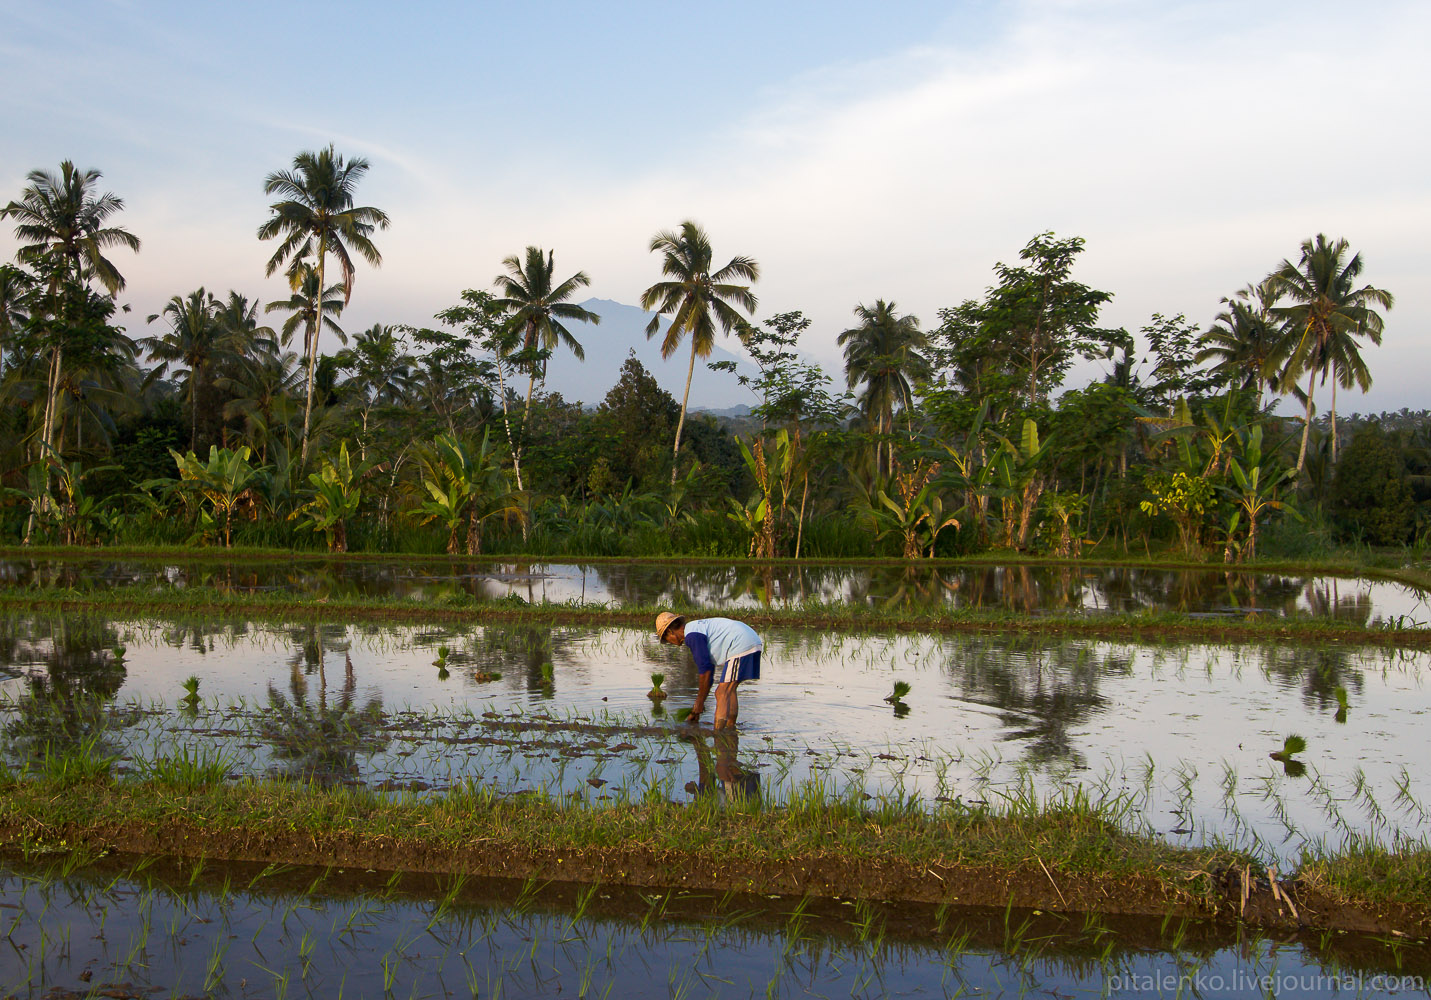 Рисовые террасы острова Бали